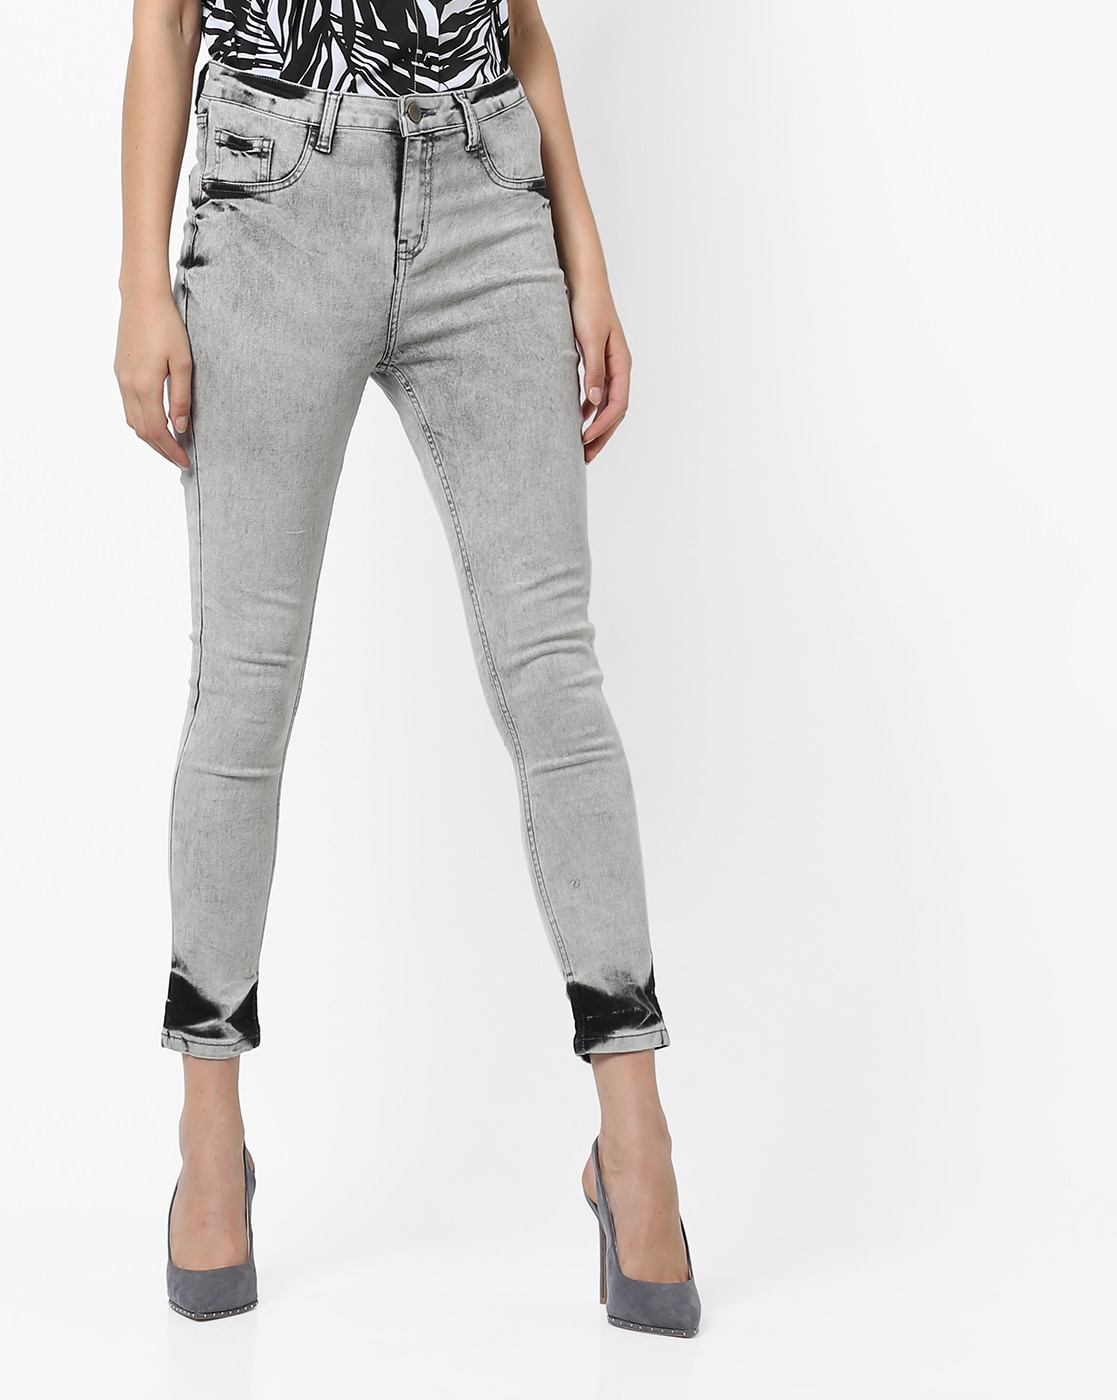 steel grey jeans